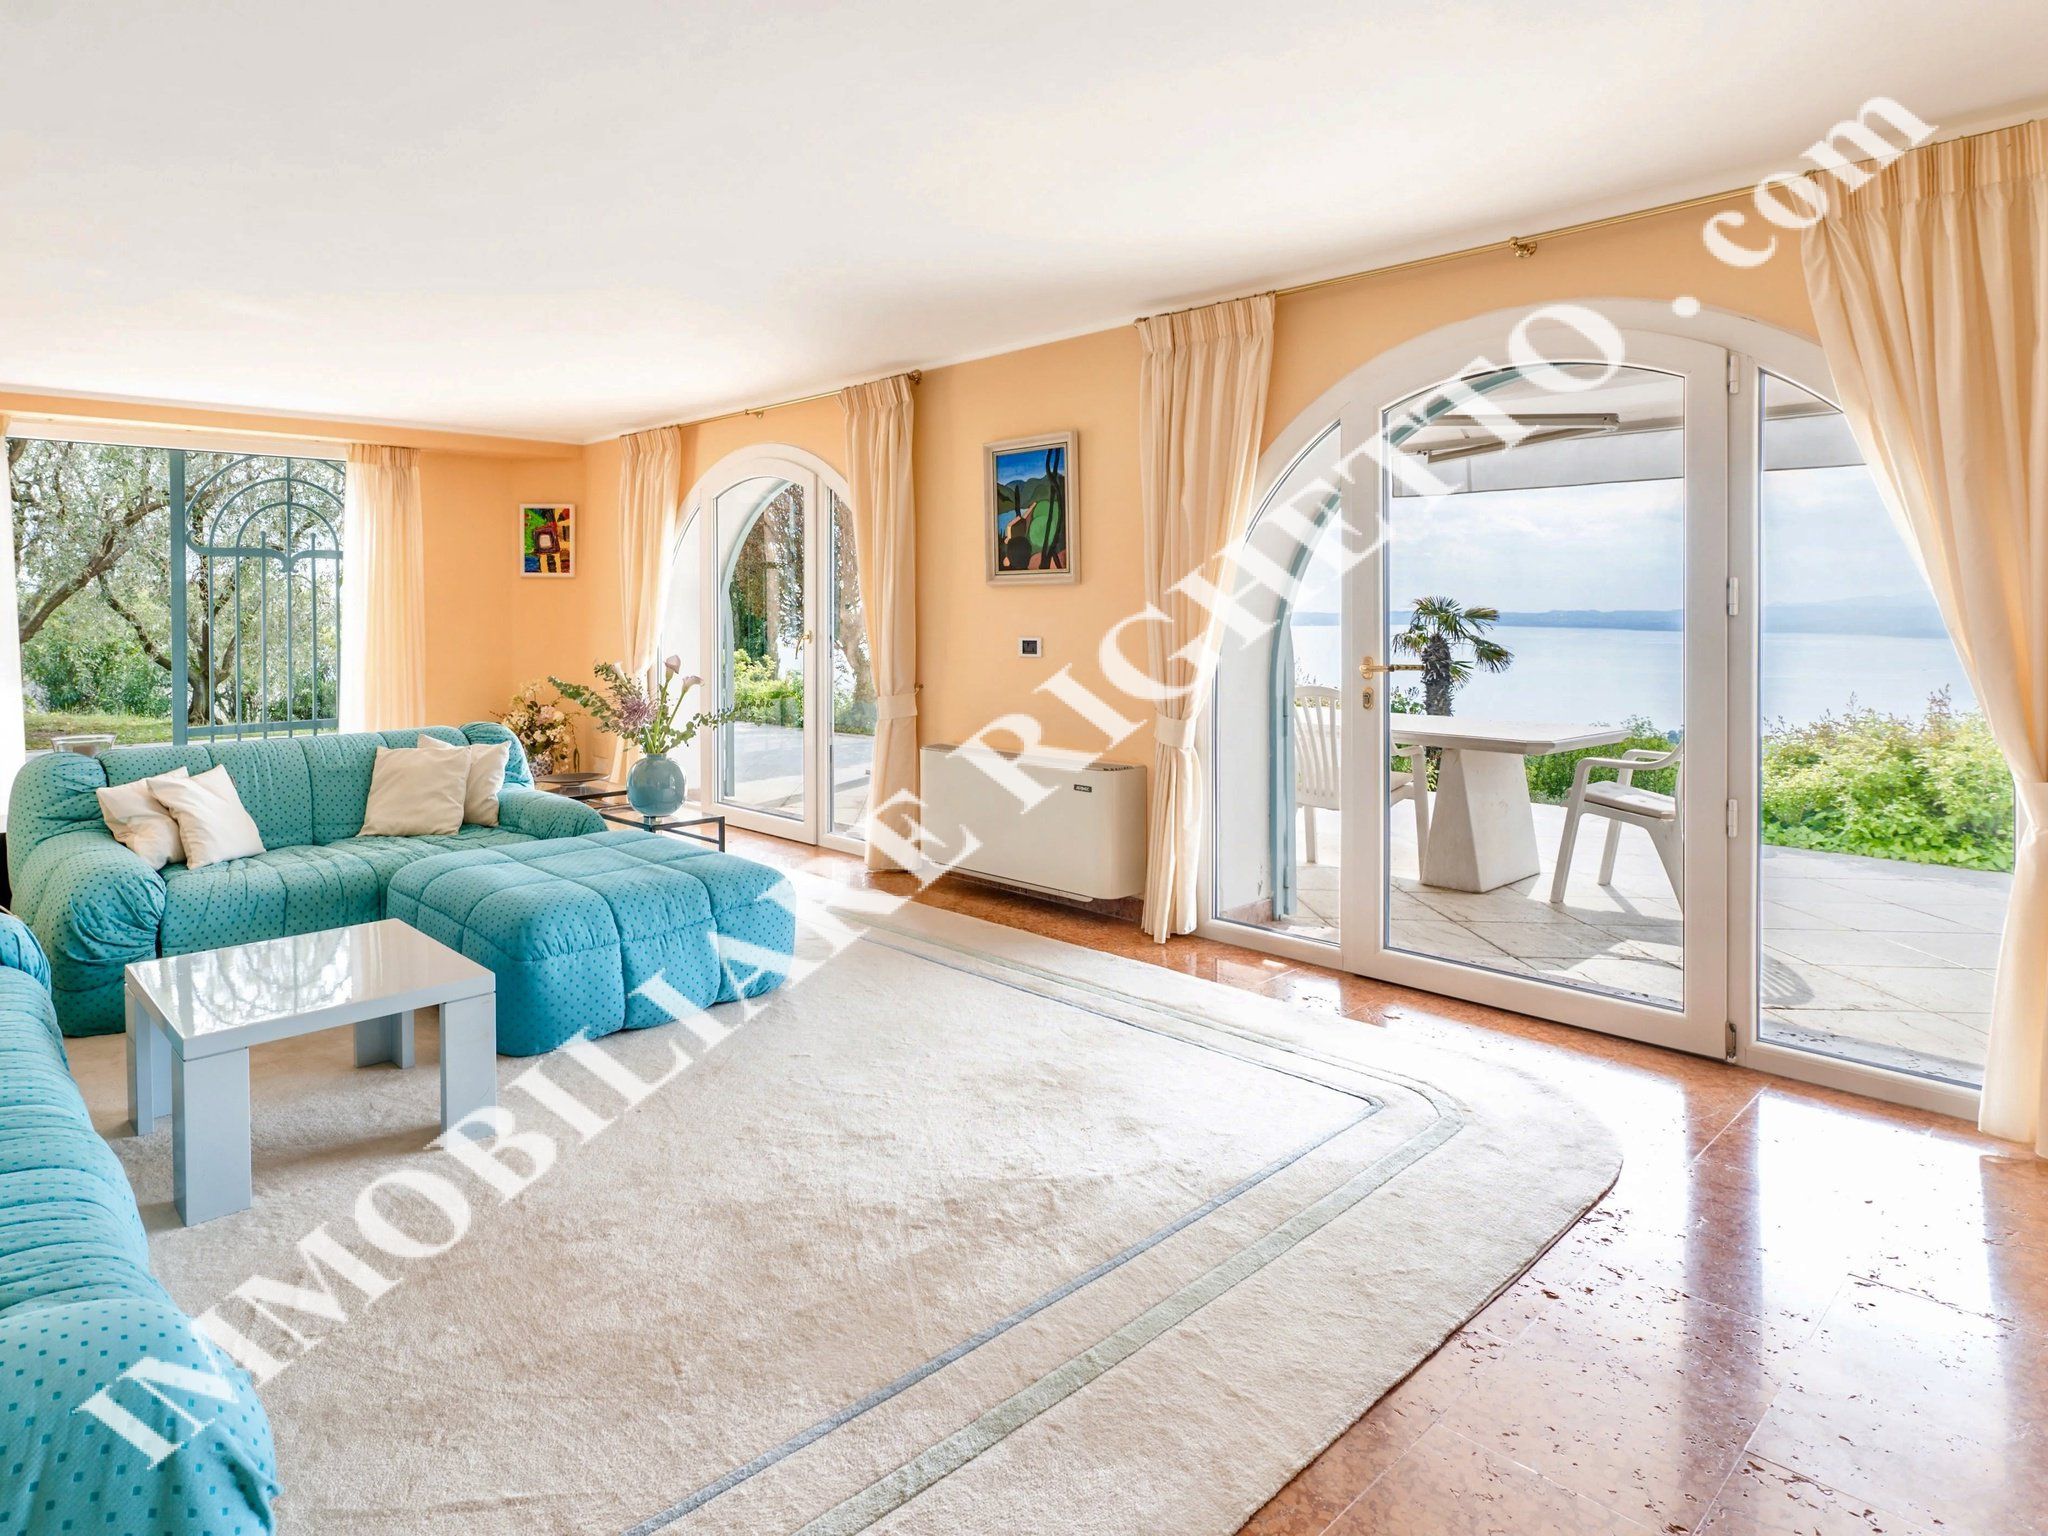 Immobilien zum Verkauf anbieten Herrliche freistehende Villa mit glanzvollem 180° PANORAMABLICK AUF DEN SEE